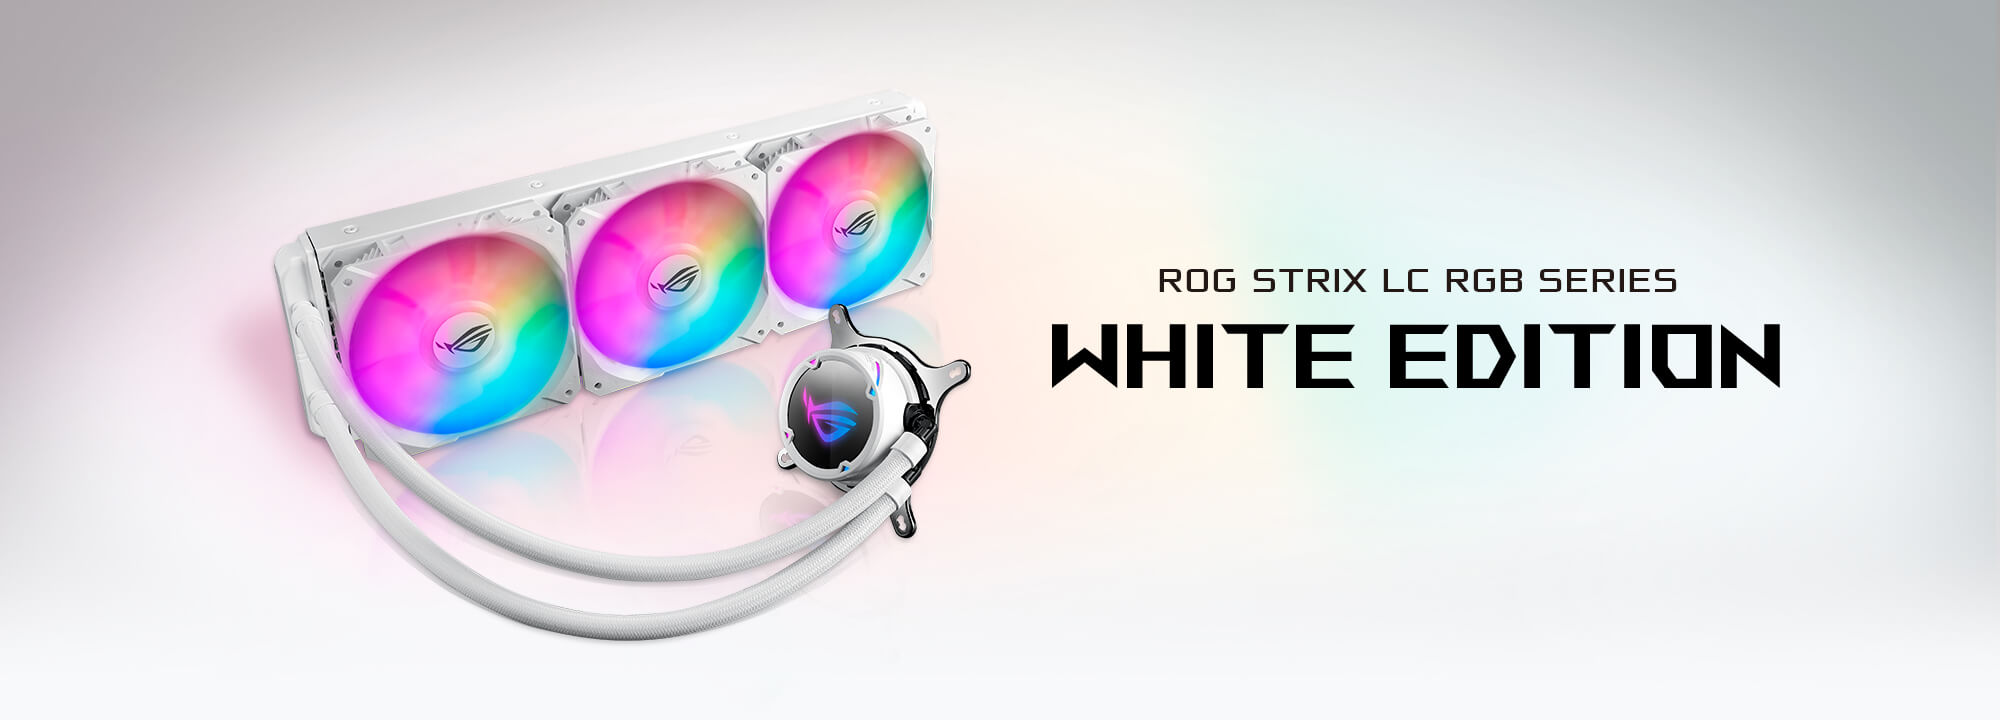 ROG Strix LC 360 RGB 白色版